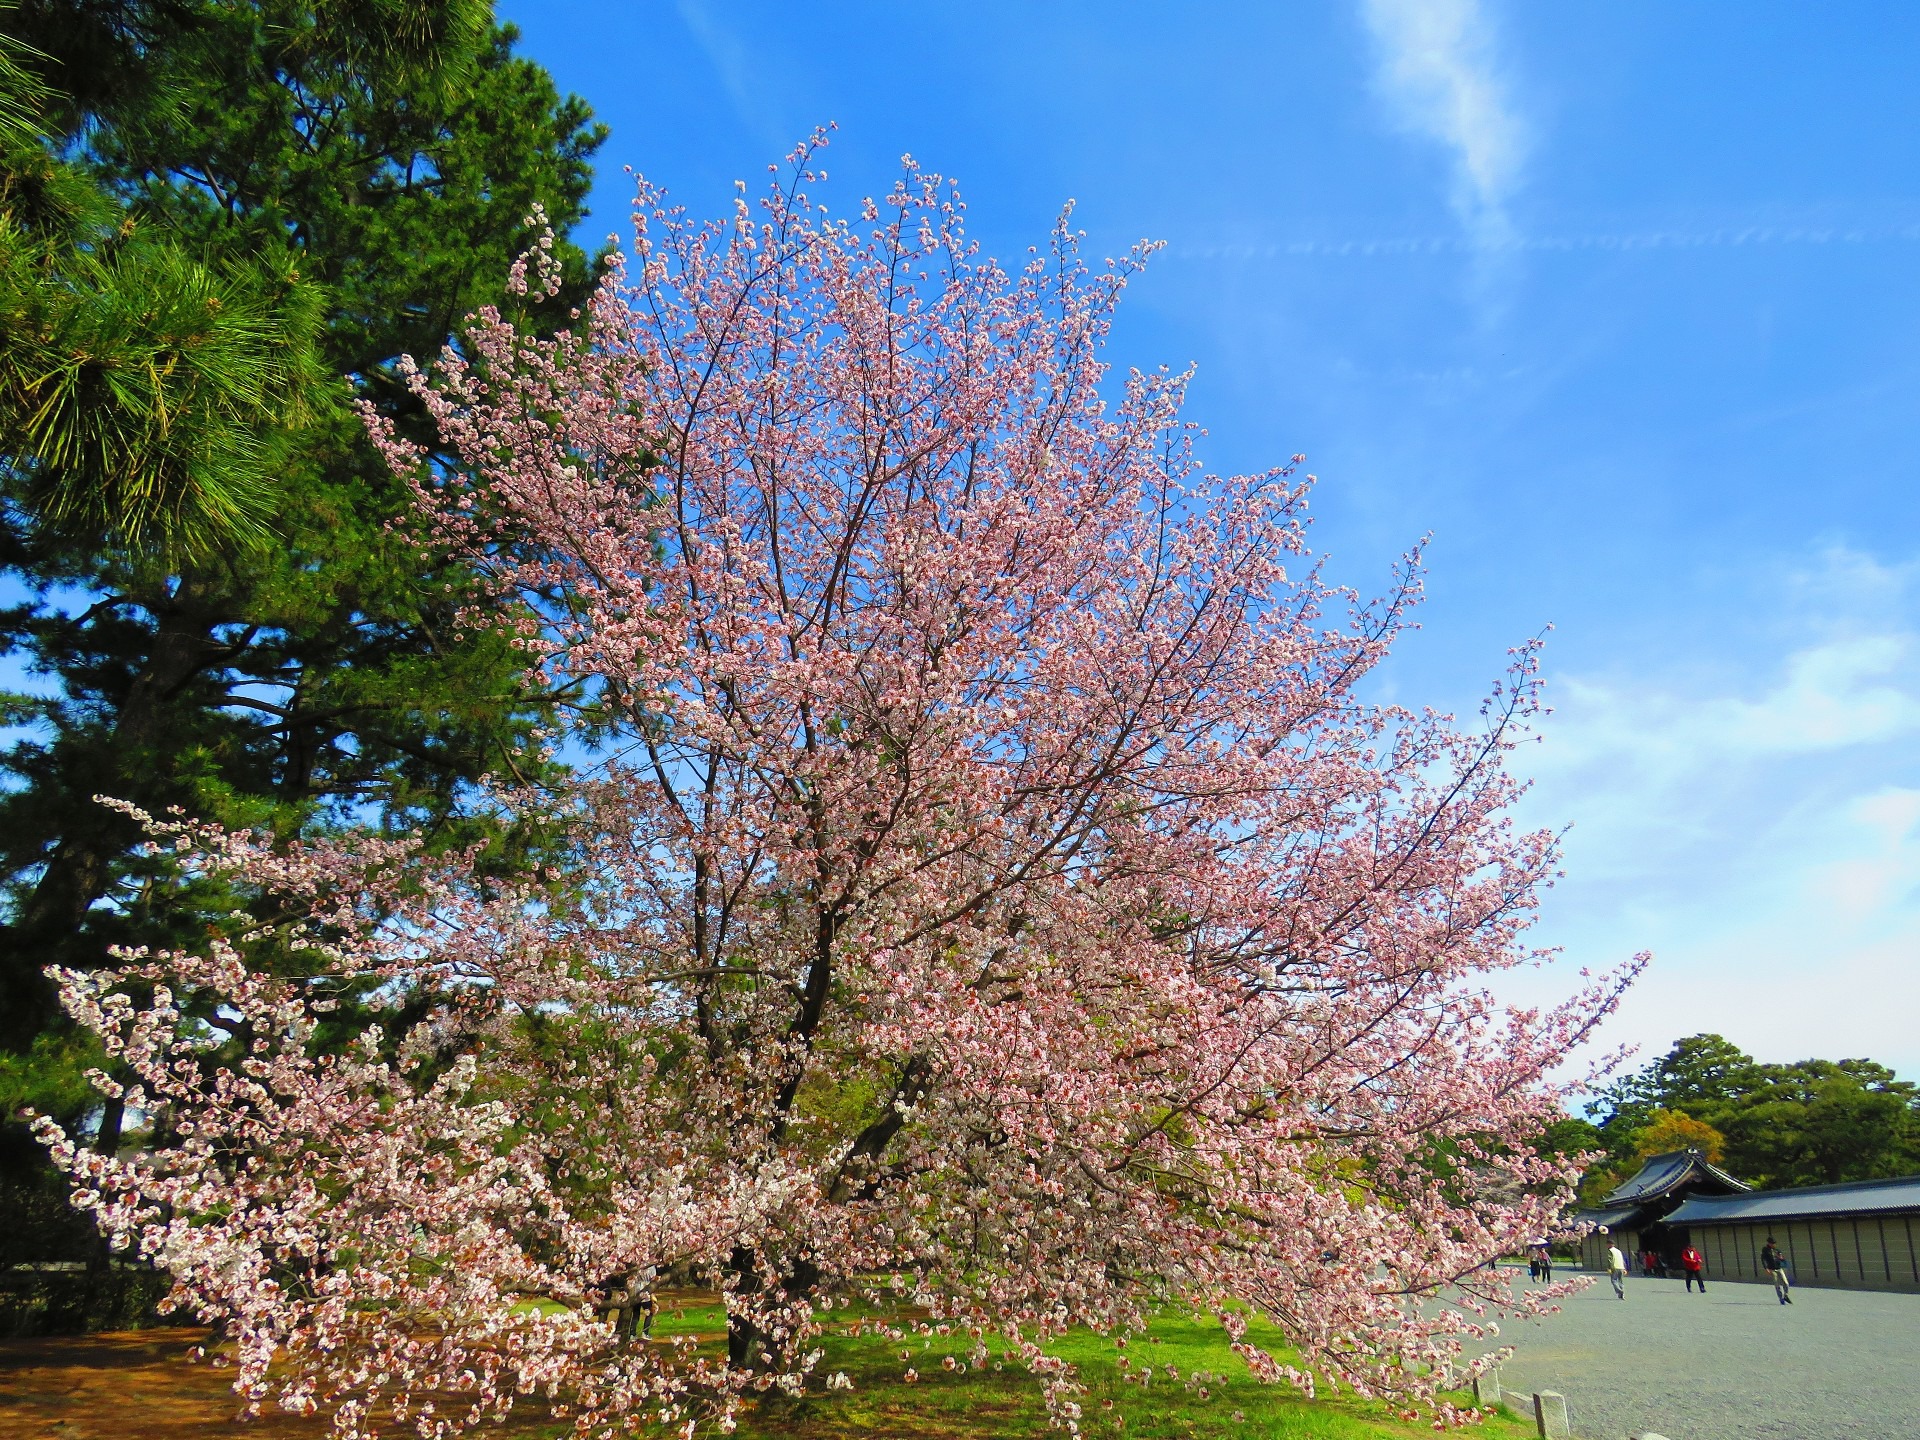 日本の風景 桜咲く頃 京都御所前の桜 壁紙19x1440 壁紙館